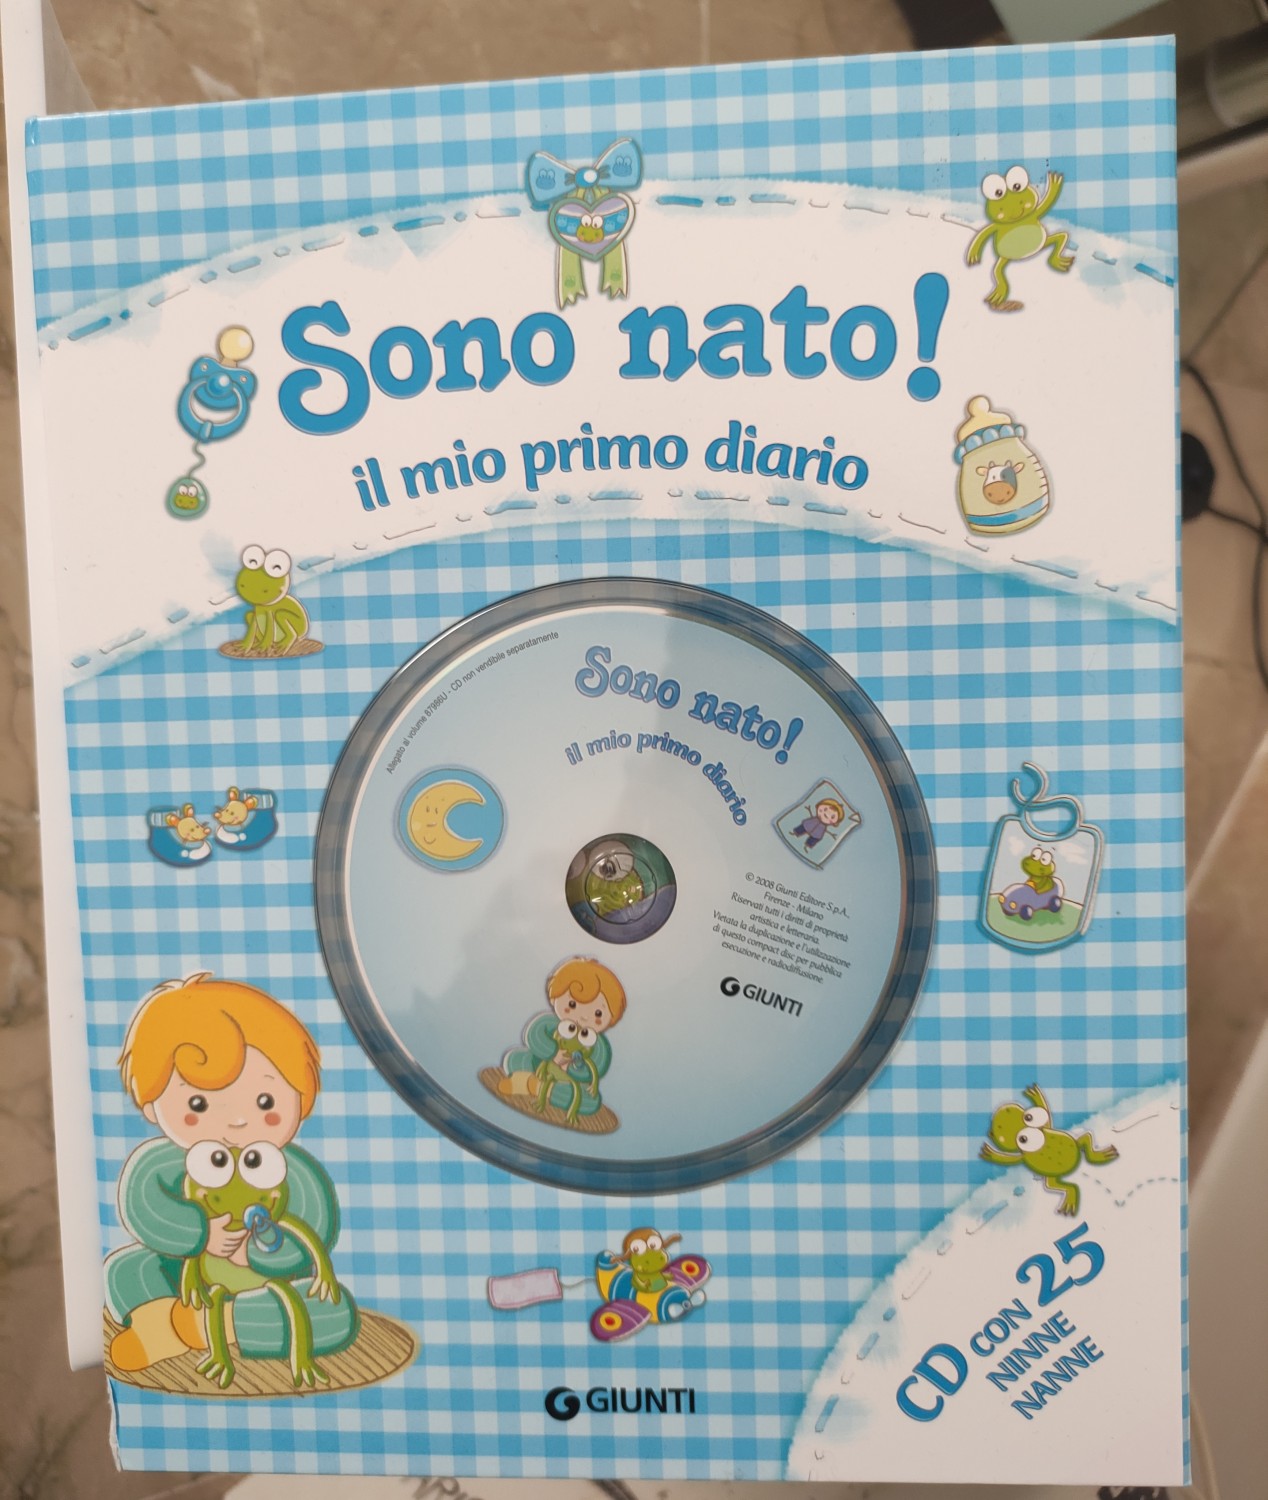 Album Nascita Bambino Sono Nato! con CD Ninne Nanne 87986U Giunti